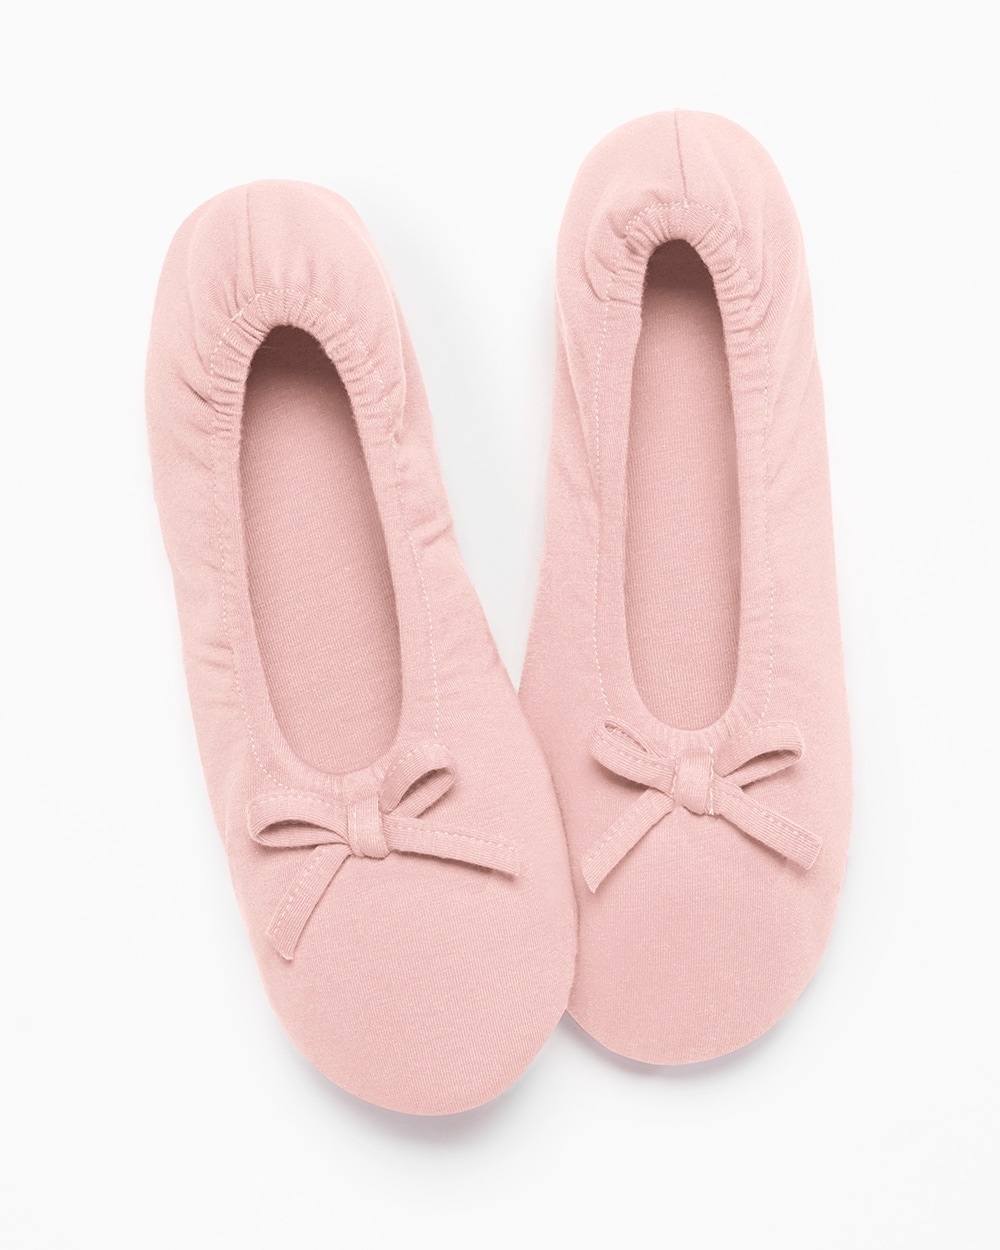 Embraceable Ballet Slippers Vintage Pink